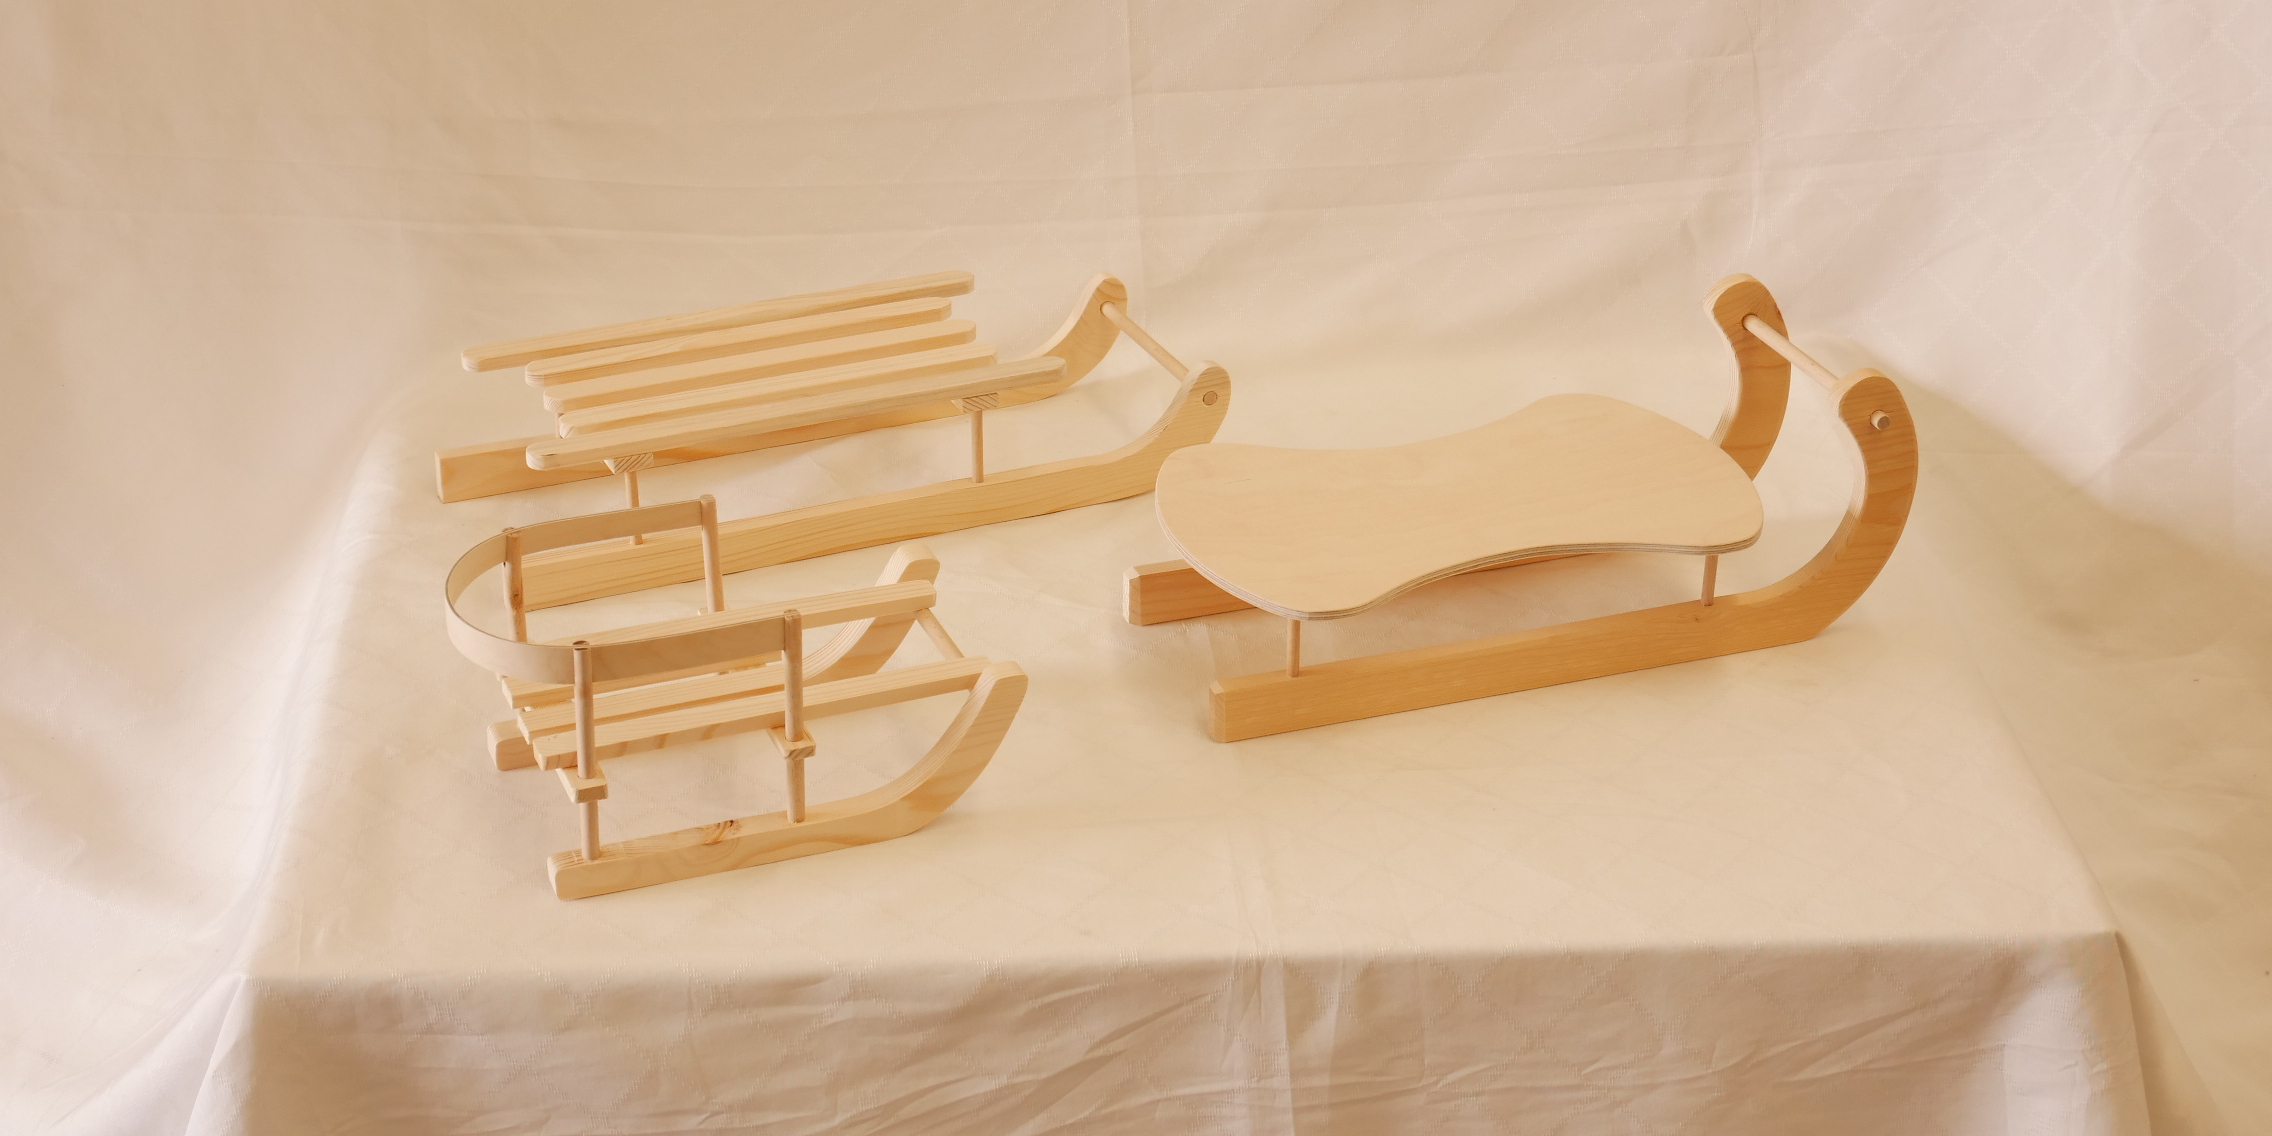 Holzfiguren - Produkte der Manufaktur der JVA Brandenburg an der Havel